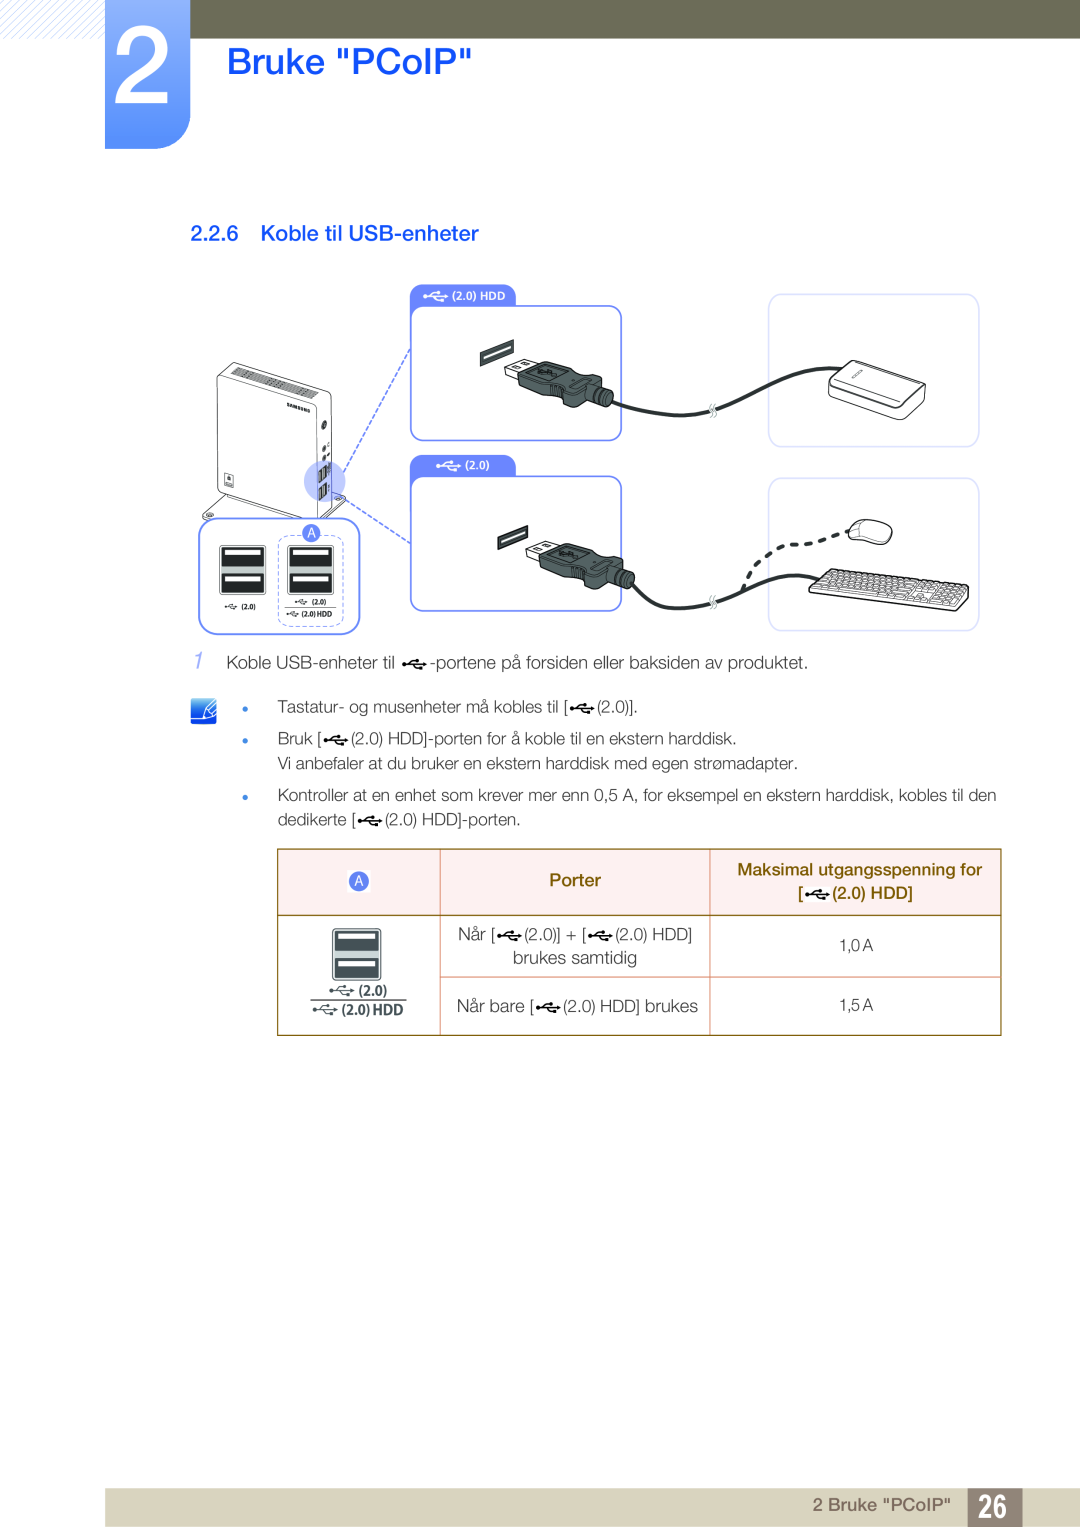 Samsung LF-NXN2N/EN, LF00FNXPFBZXEN manual Koble til USB-enheter, Bruke PCoIP, Porter, Maksimal utgangsspenning for, 2.0 HDD 